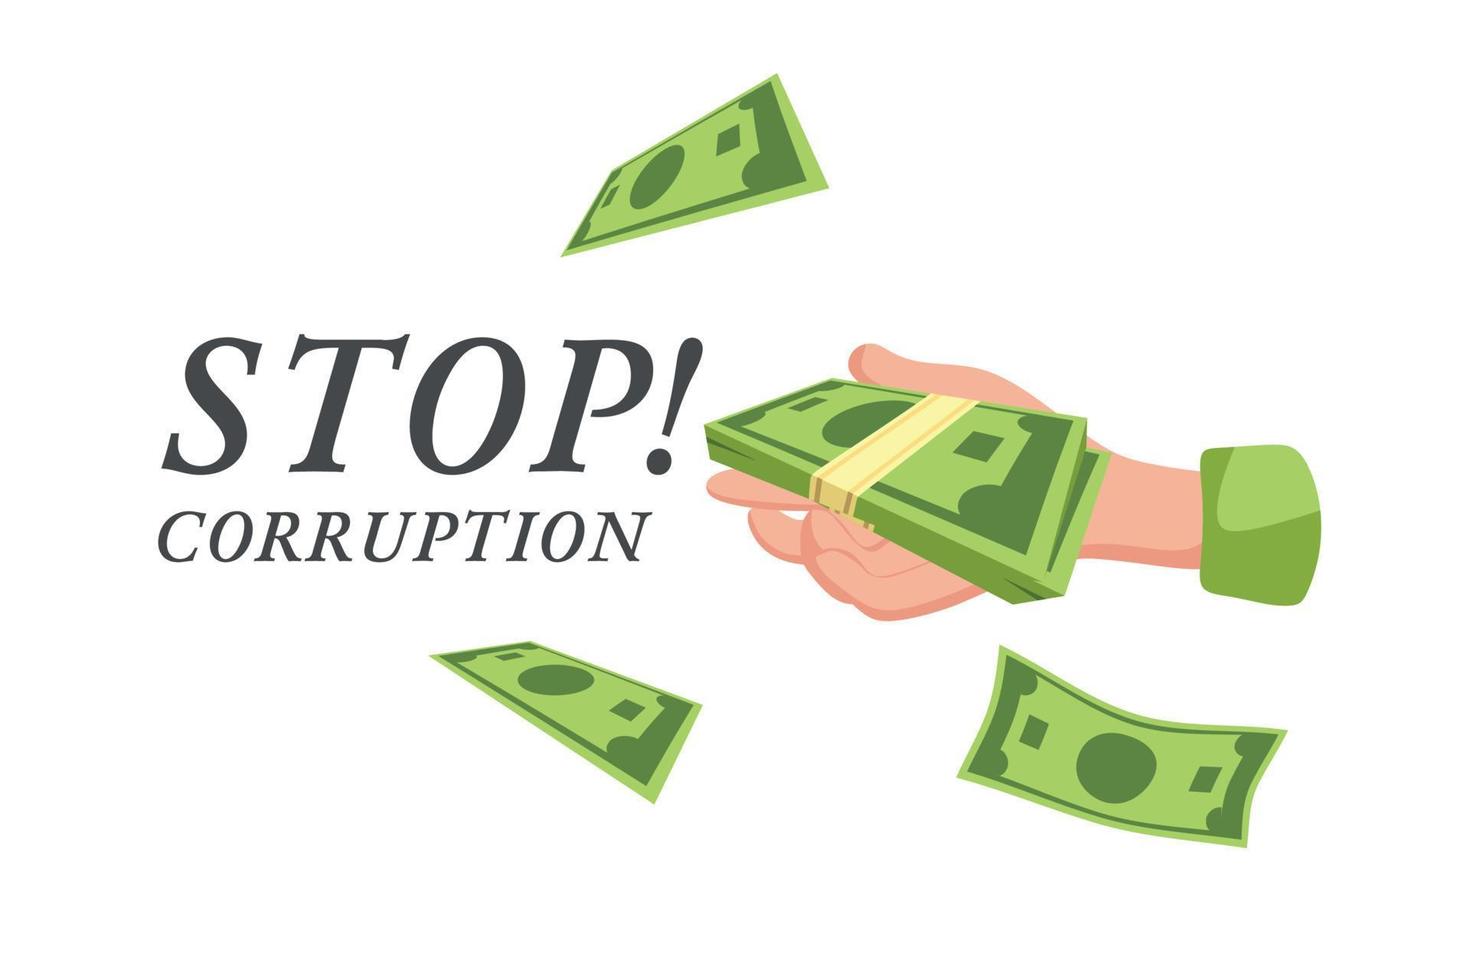 detener la corrupción. un cartel o publicación en internet. ilustración de dibujos animados de vectores